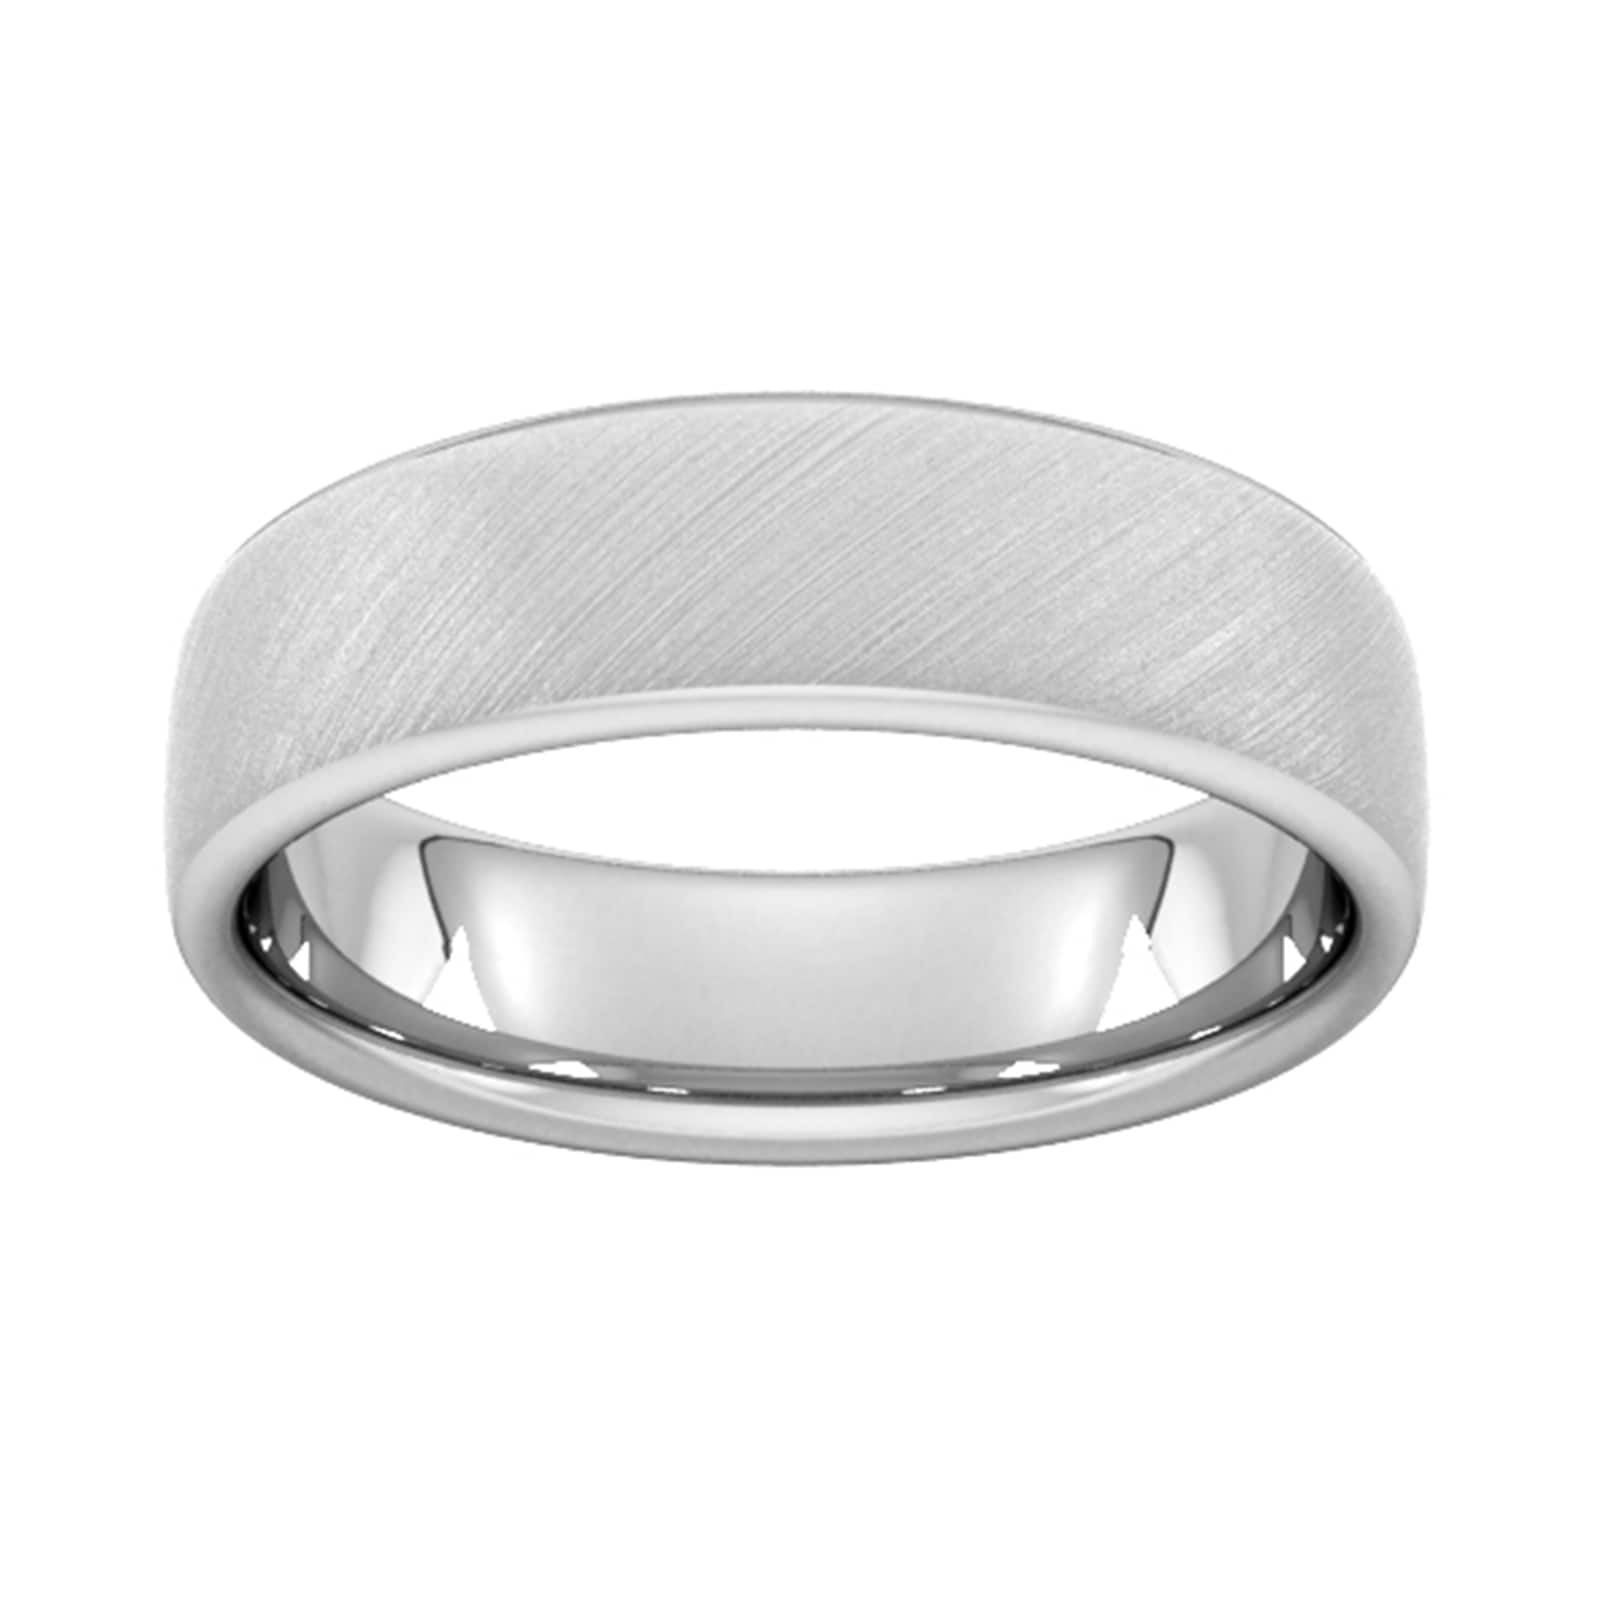 6mm Traditional Court Heavy Diagonal Matt Finish Wedding Ring In 950 Palladium - Ring Size K